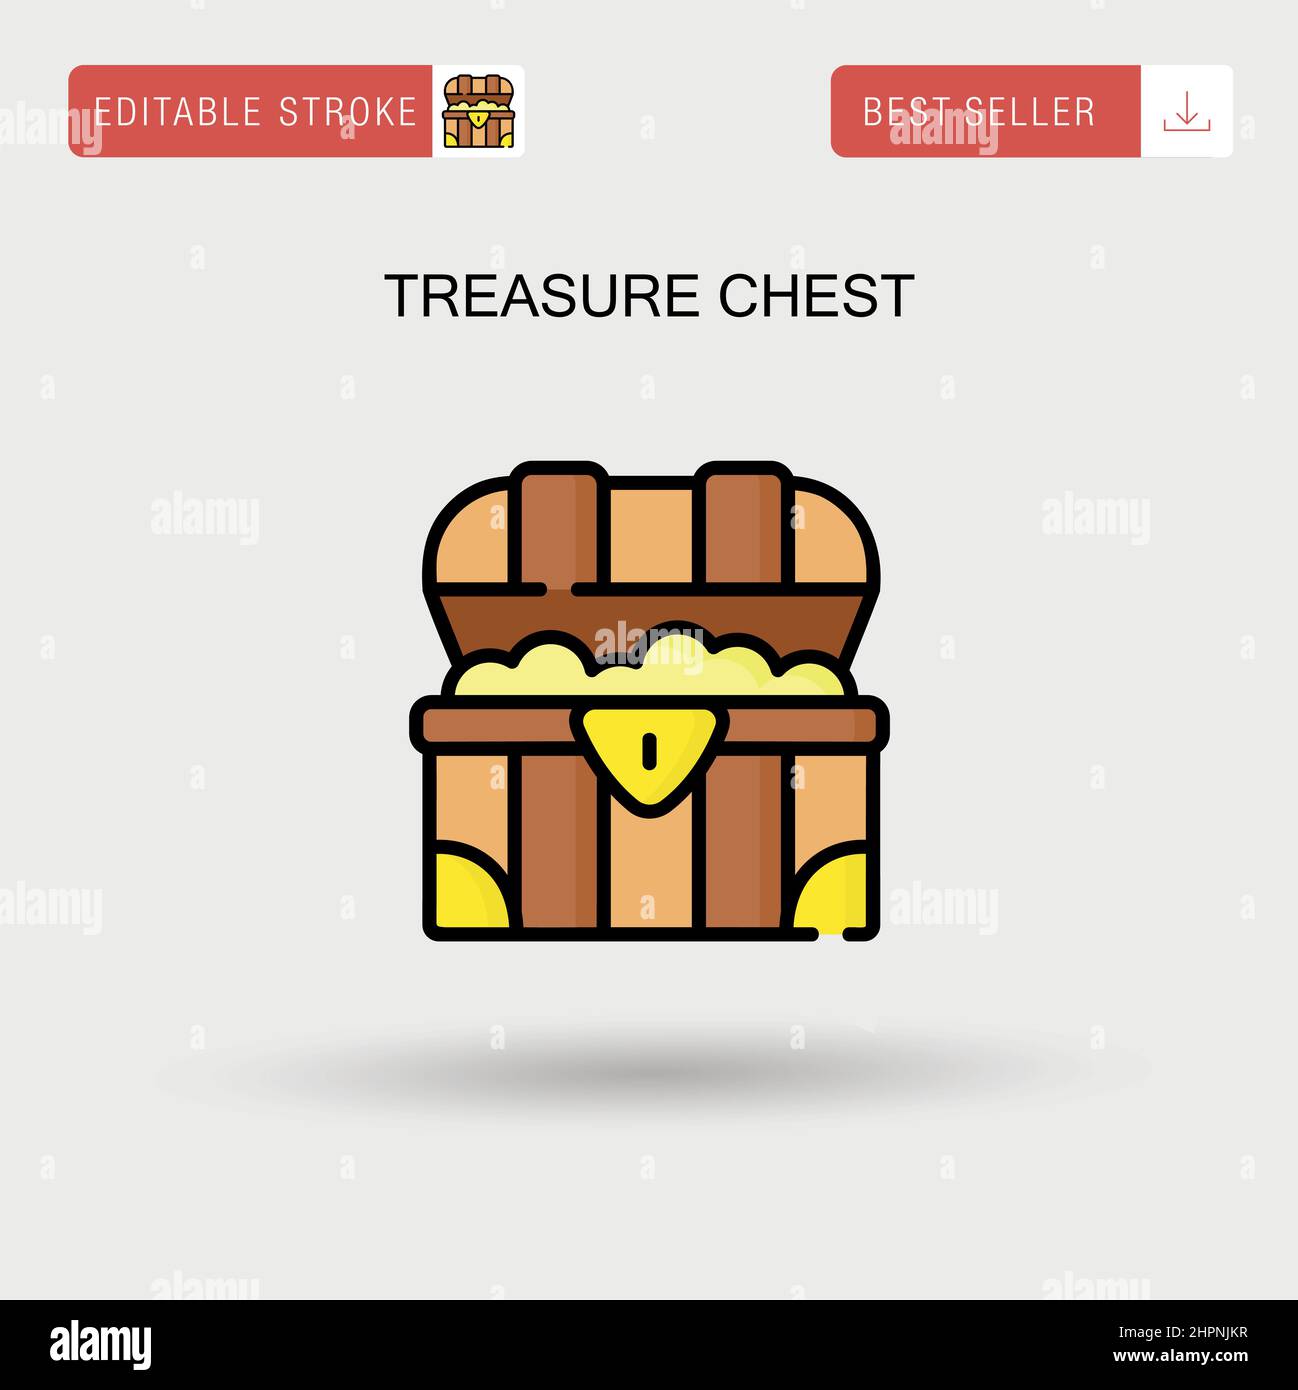 treasure chest Sticker